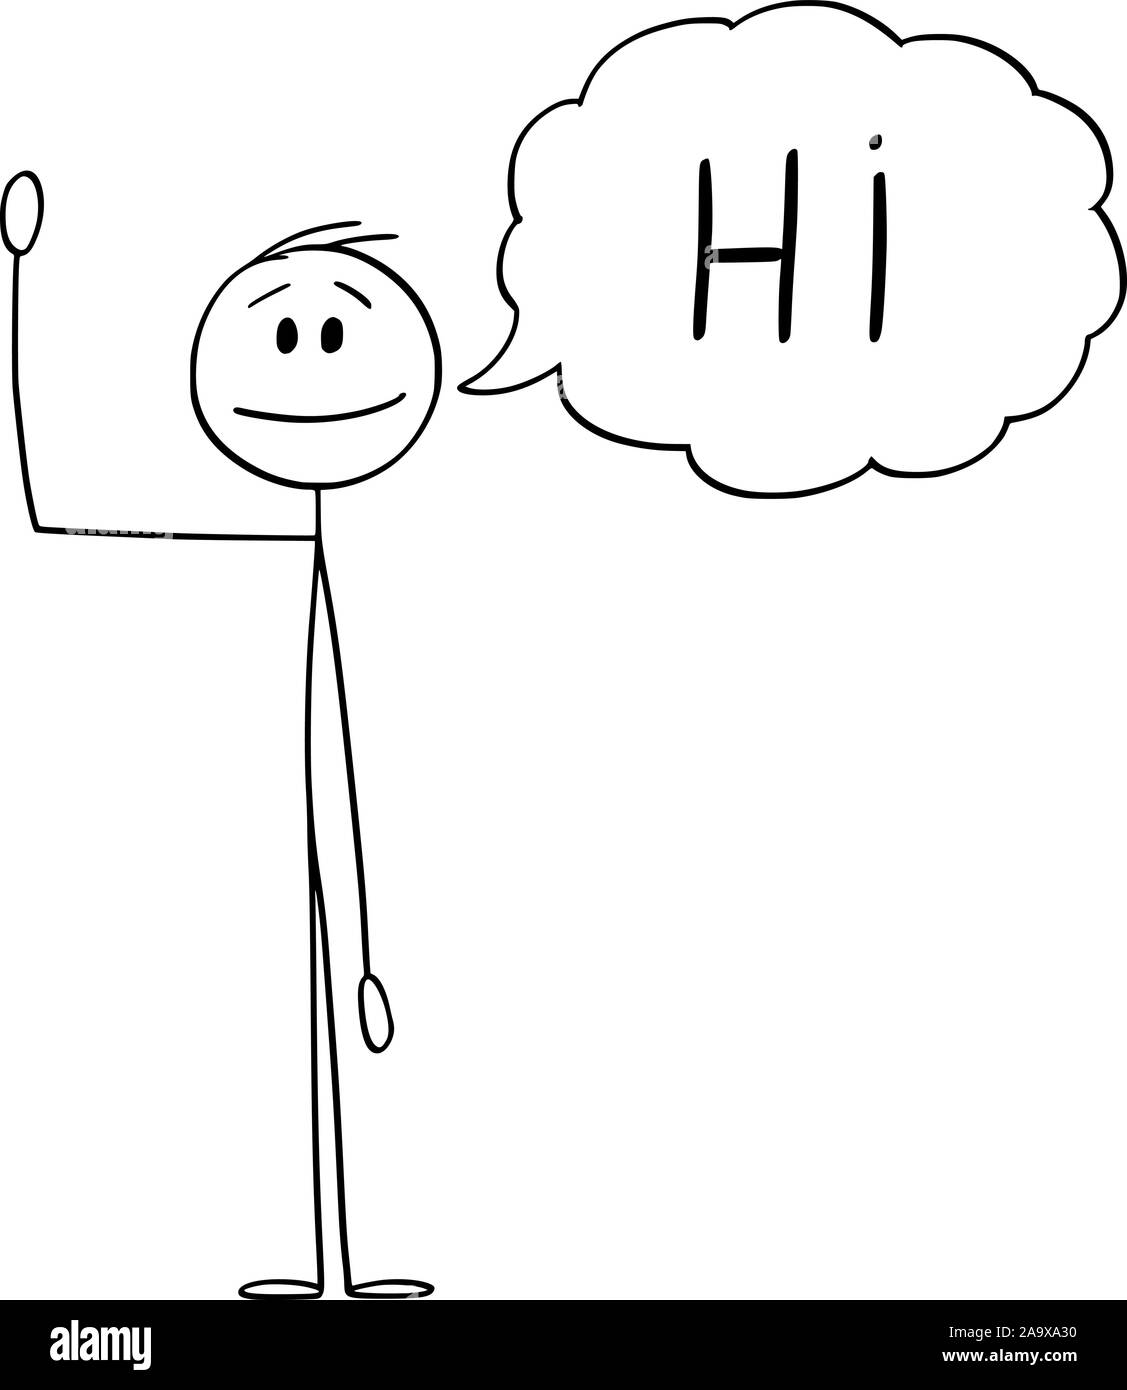 Vector cartoon stick figura disegno illustrazione concettuale dell'uomo o imprenditore agitando la mano e saluto con bolla di testo o discorso dicendo a palloncino hi. Illustrazione Vettoriale